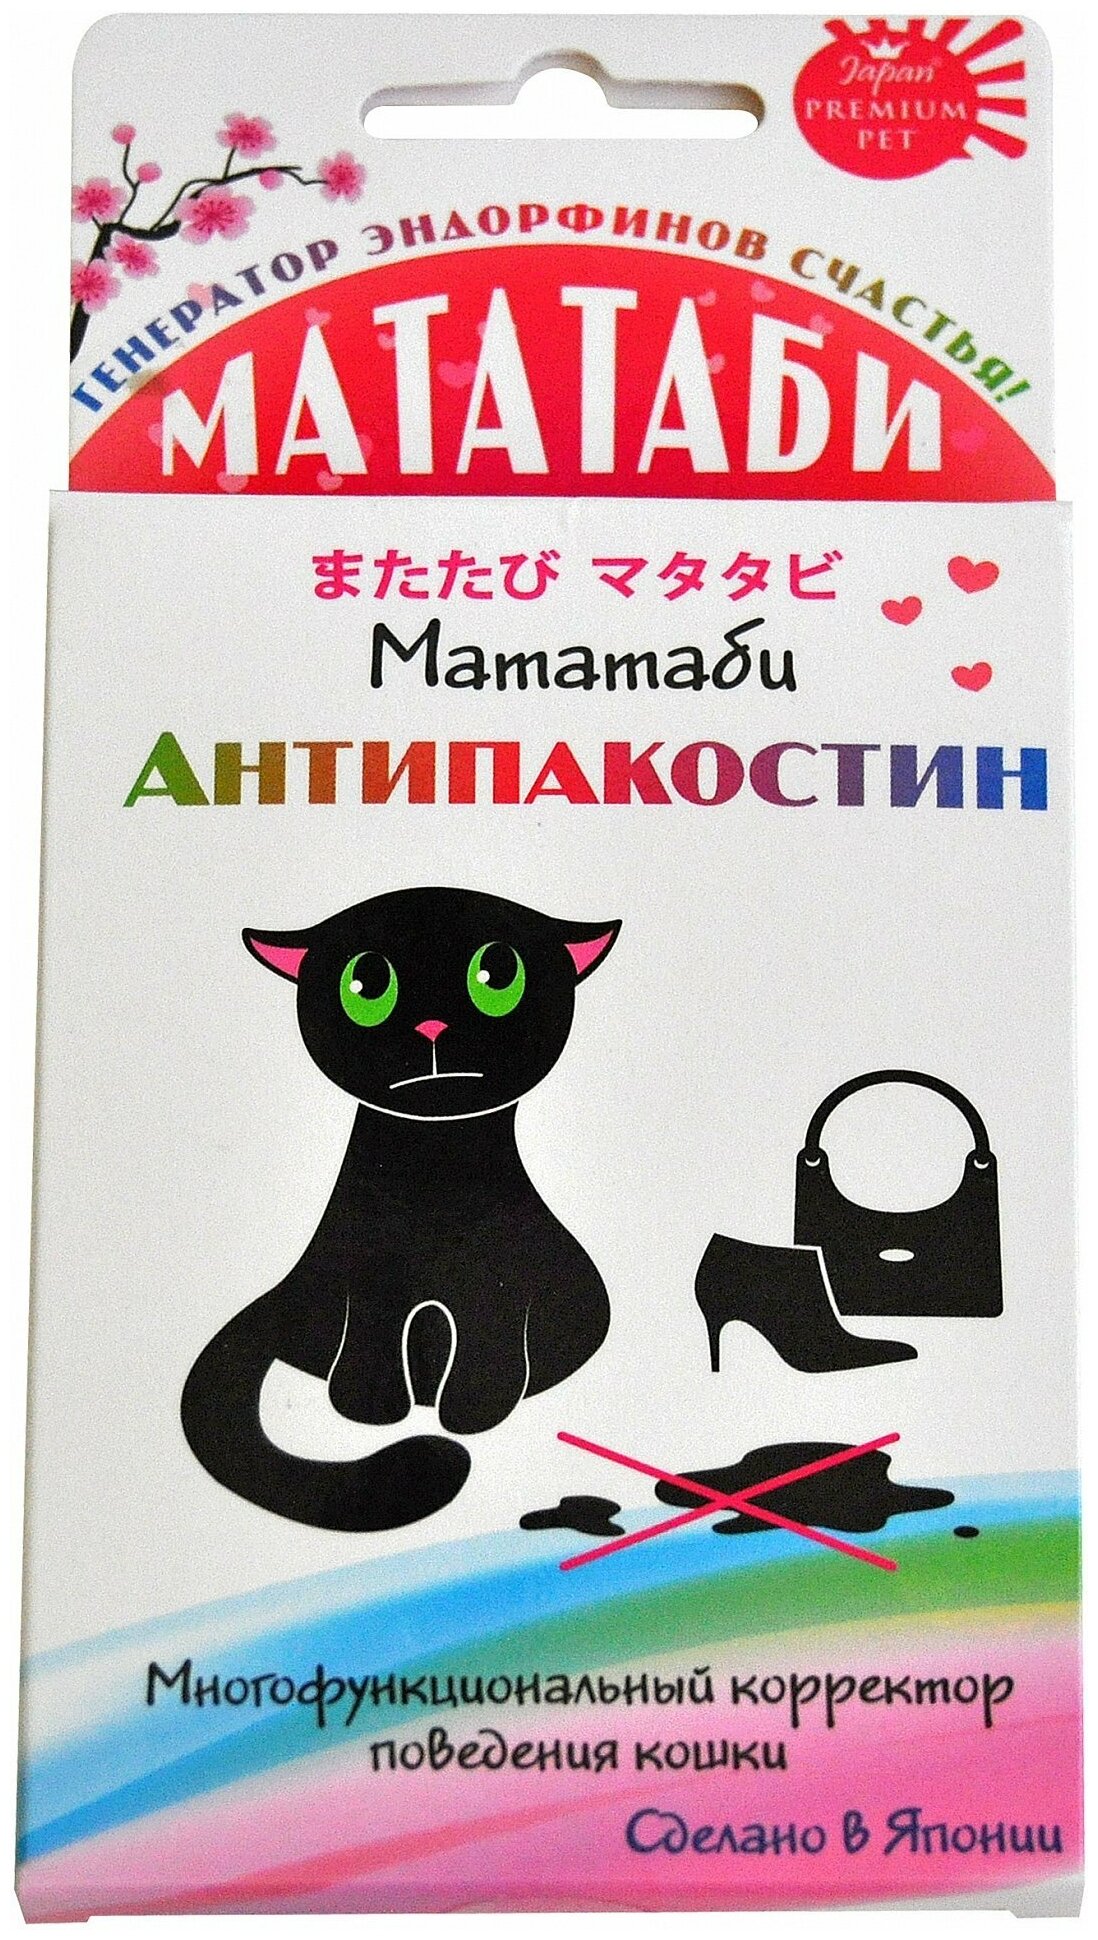 Порошок Japan Premium Pet Мататаби для отучения от меток, 1 г